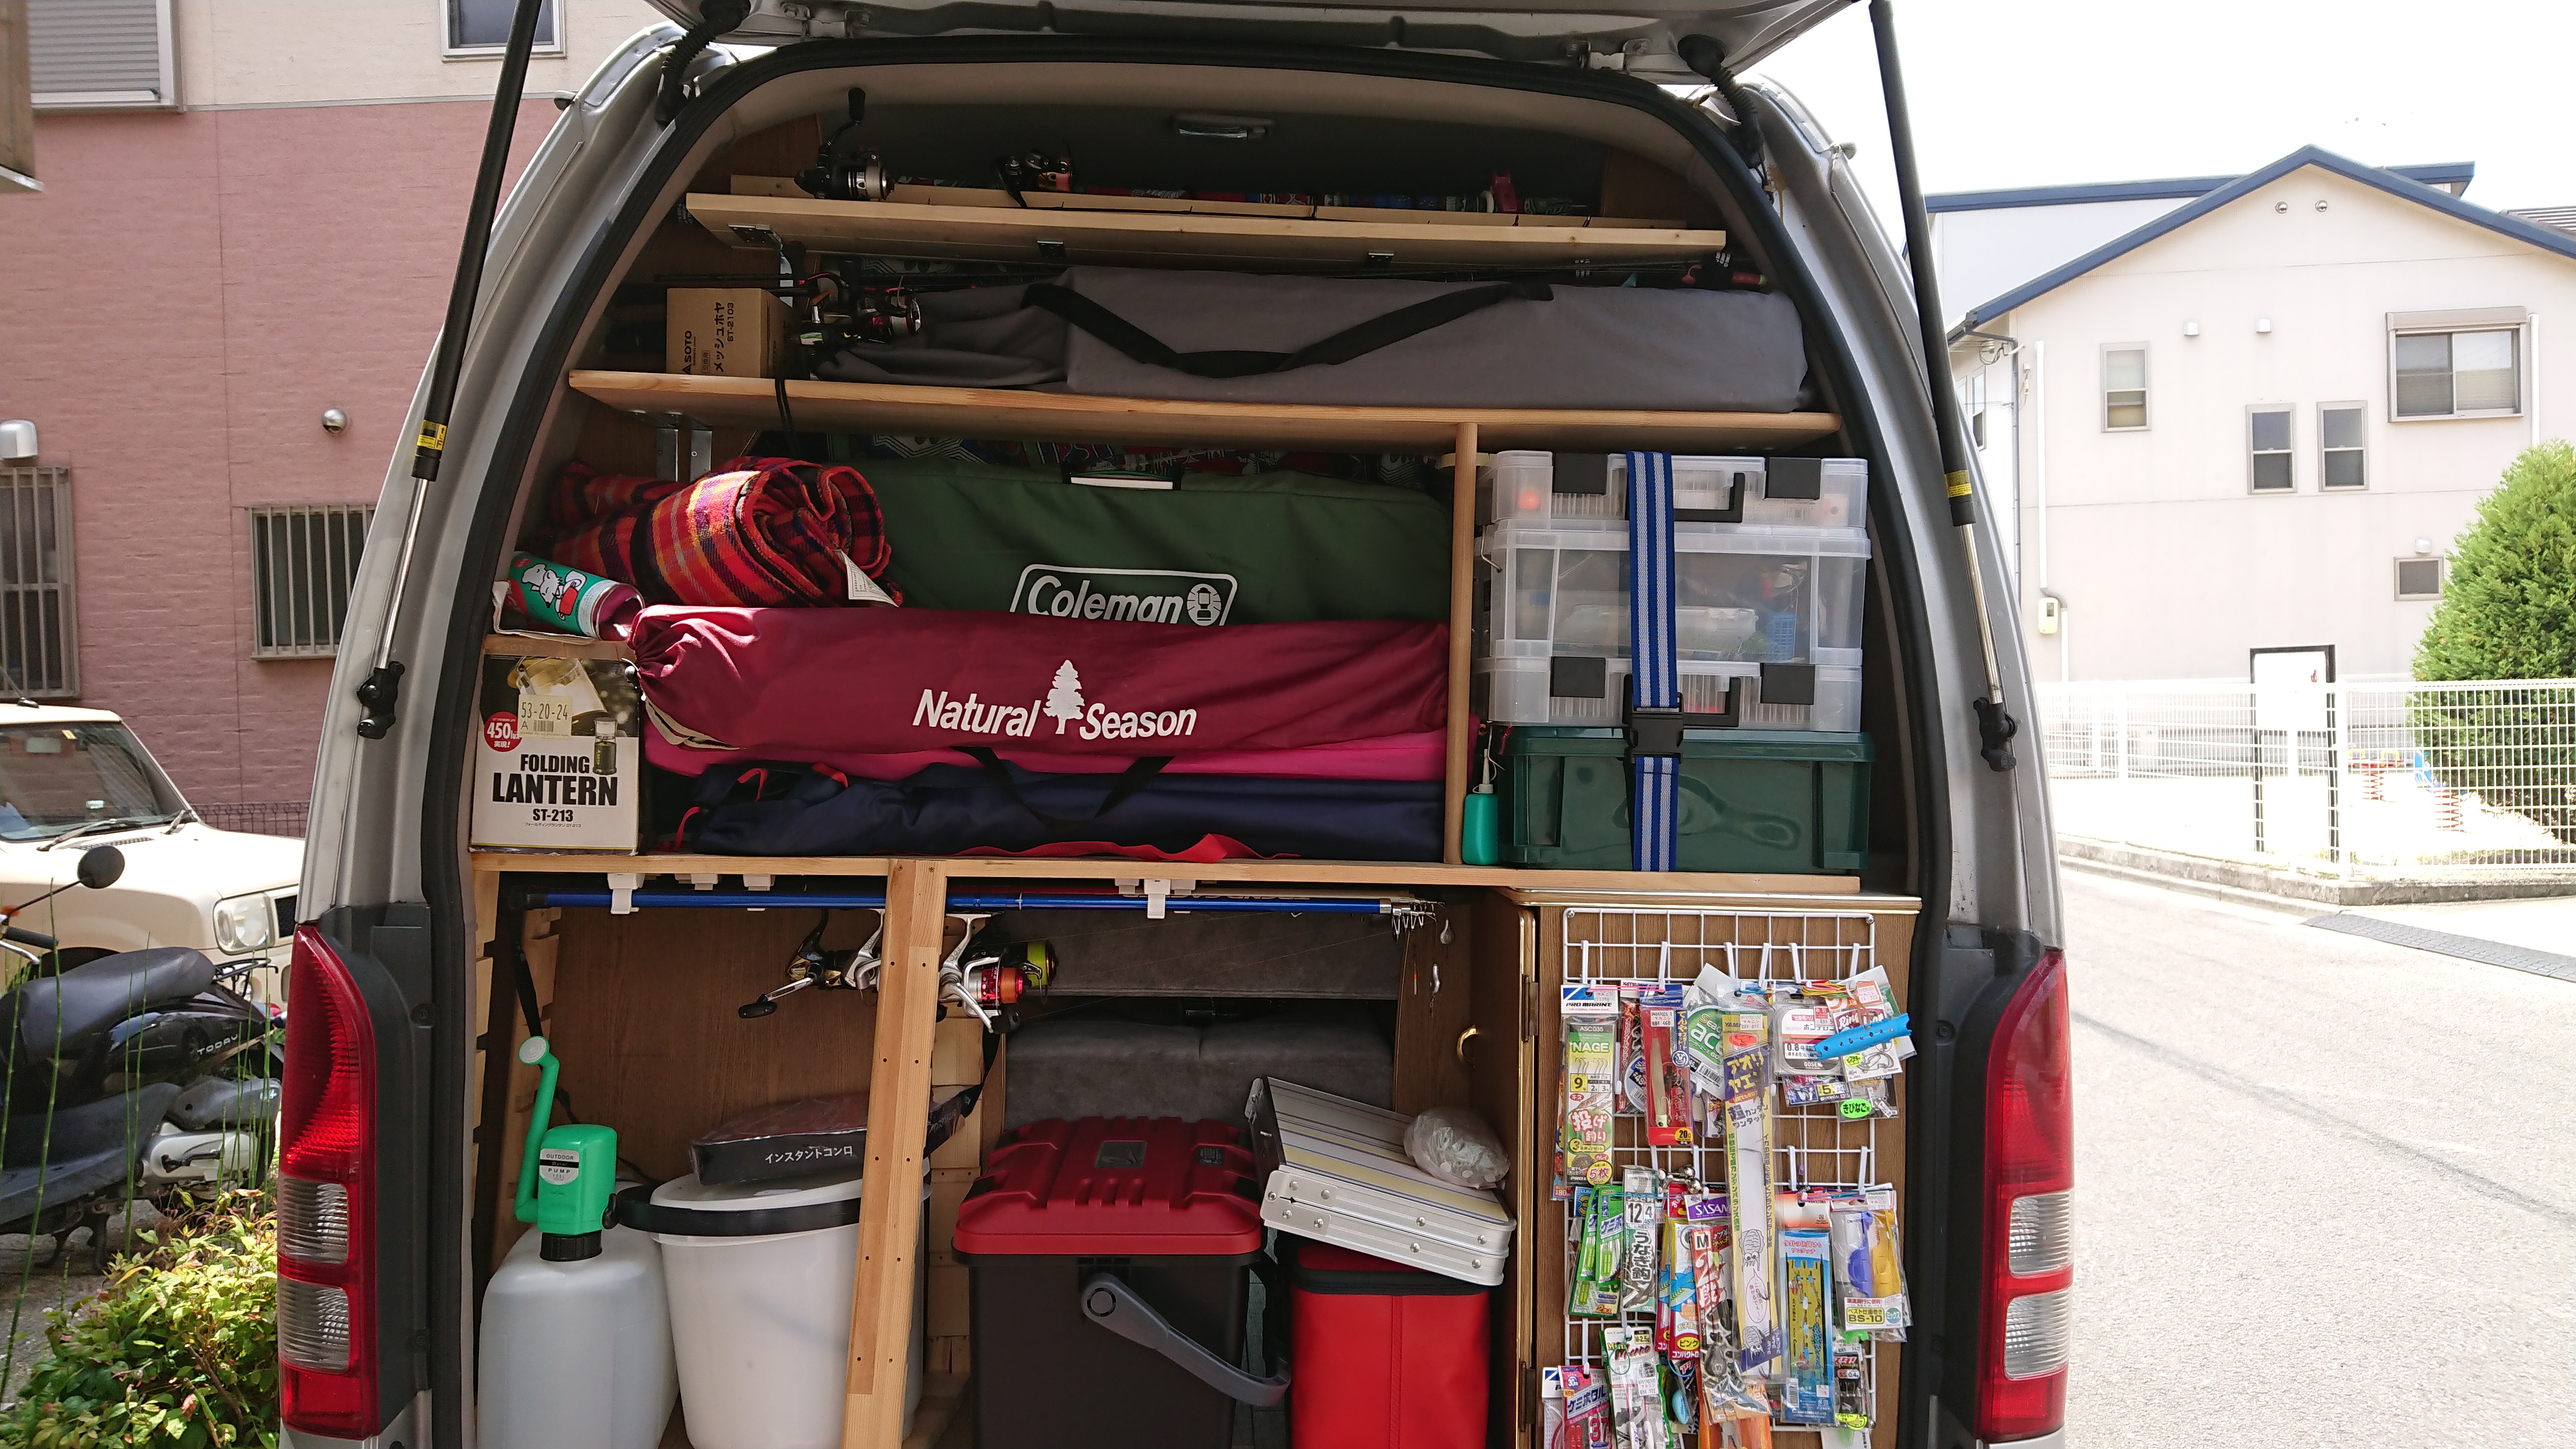 釣具 キャンプ道具を常時 収納できるトランクに棚を取り付けました ハイエースのトランク部分を最大限に荷物を積めるよう棚を自作しました 和歌山こてつの車中泊 釣り情報